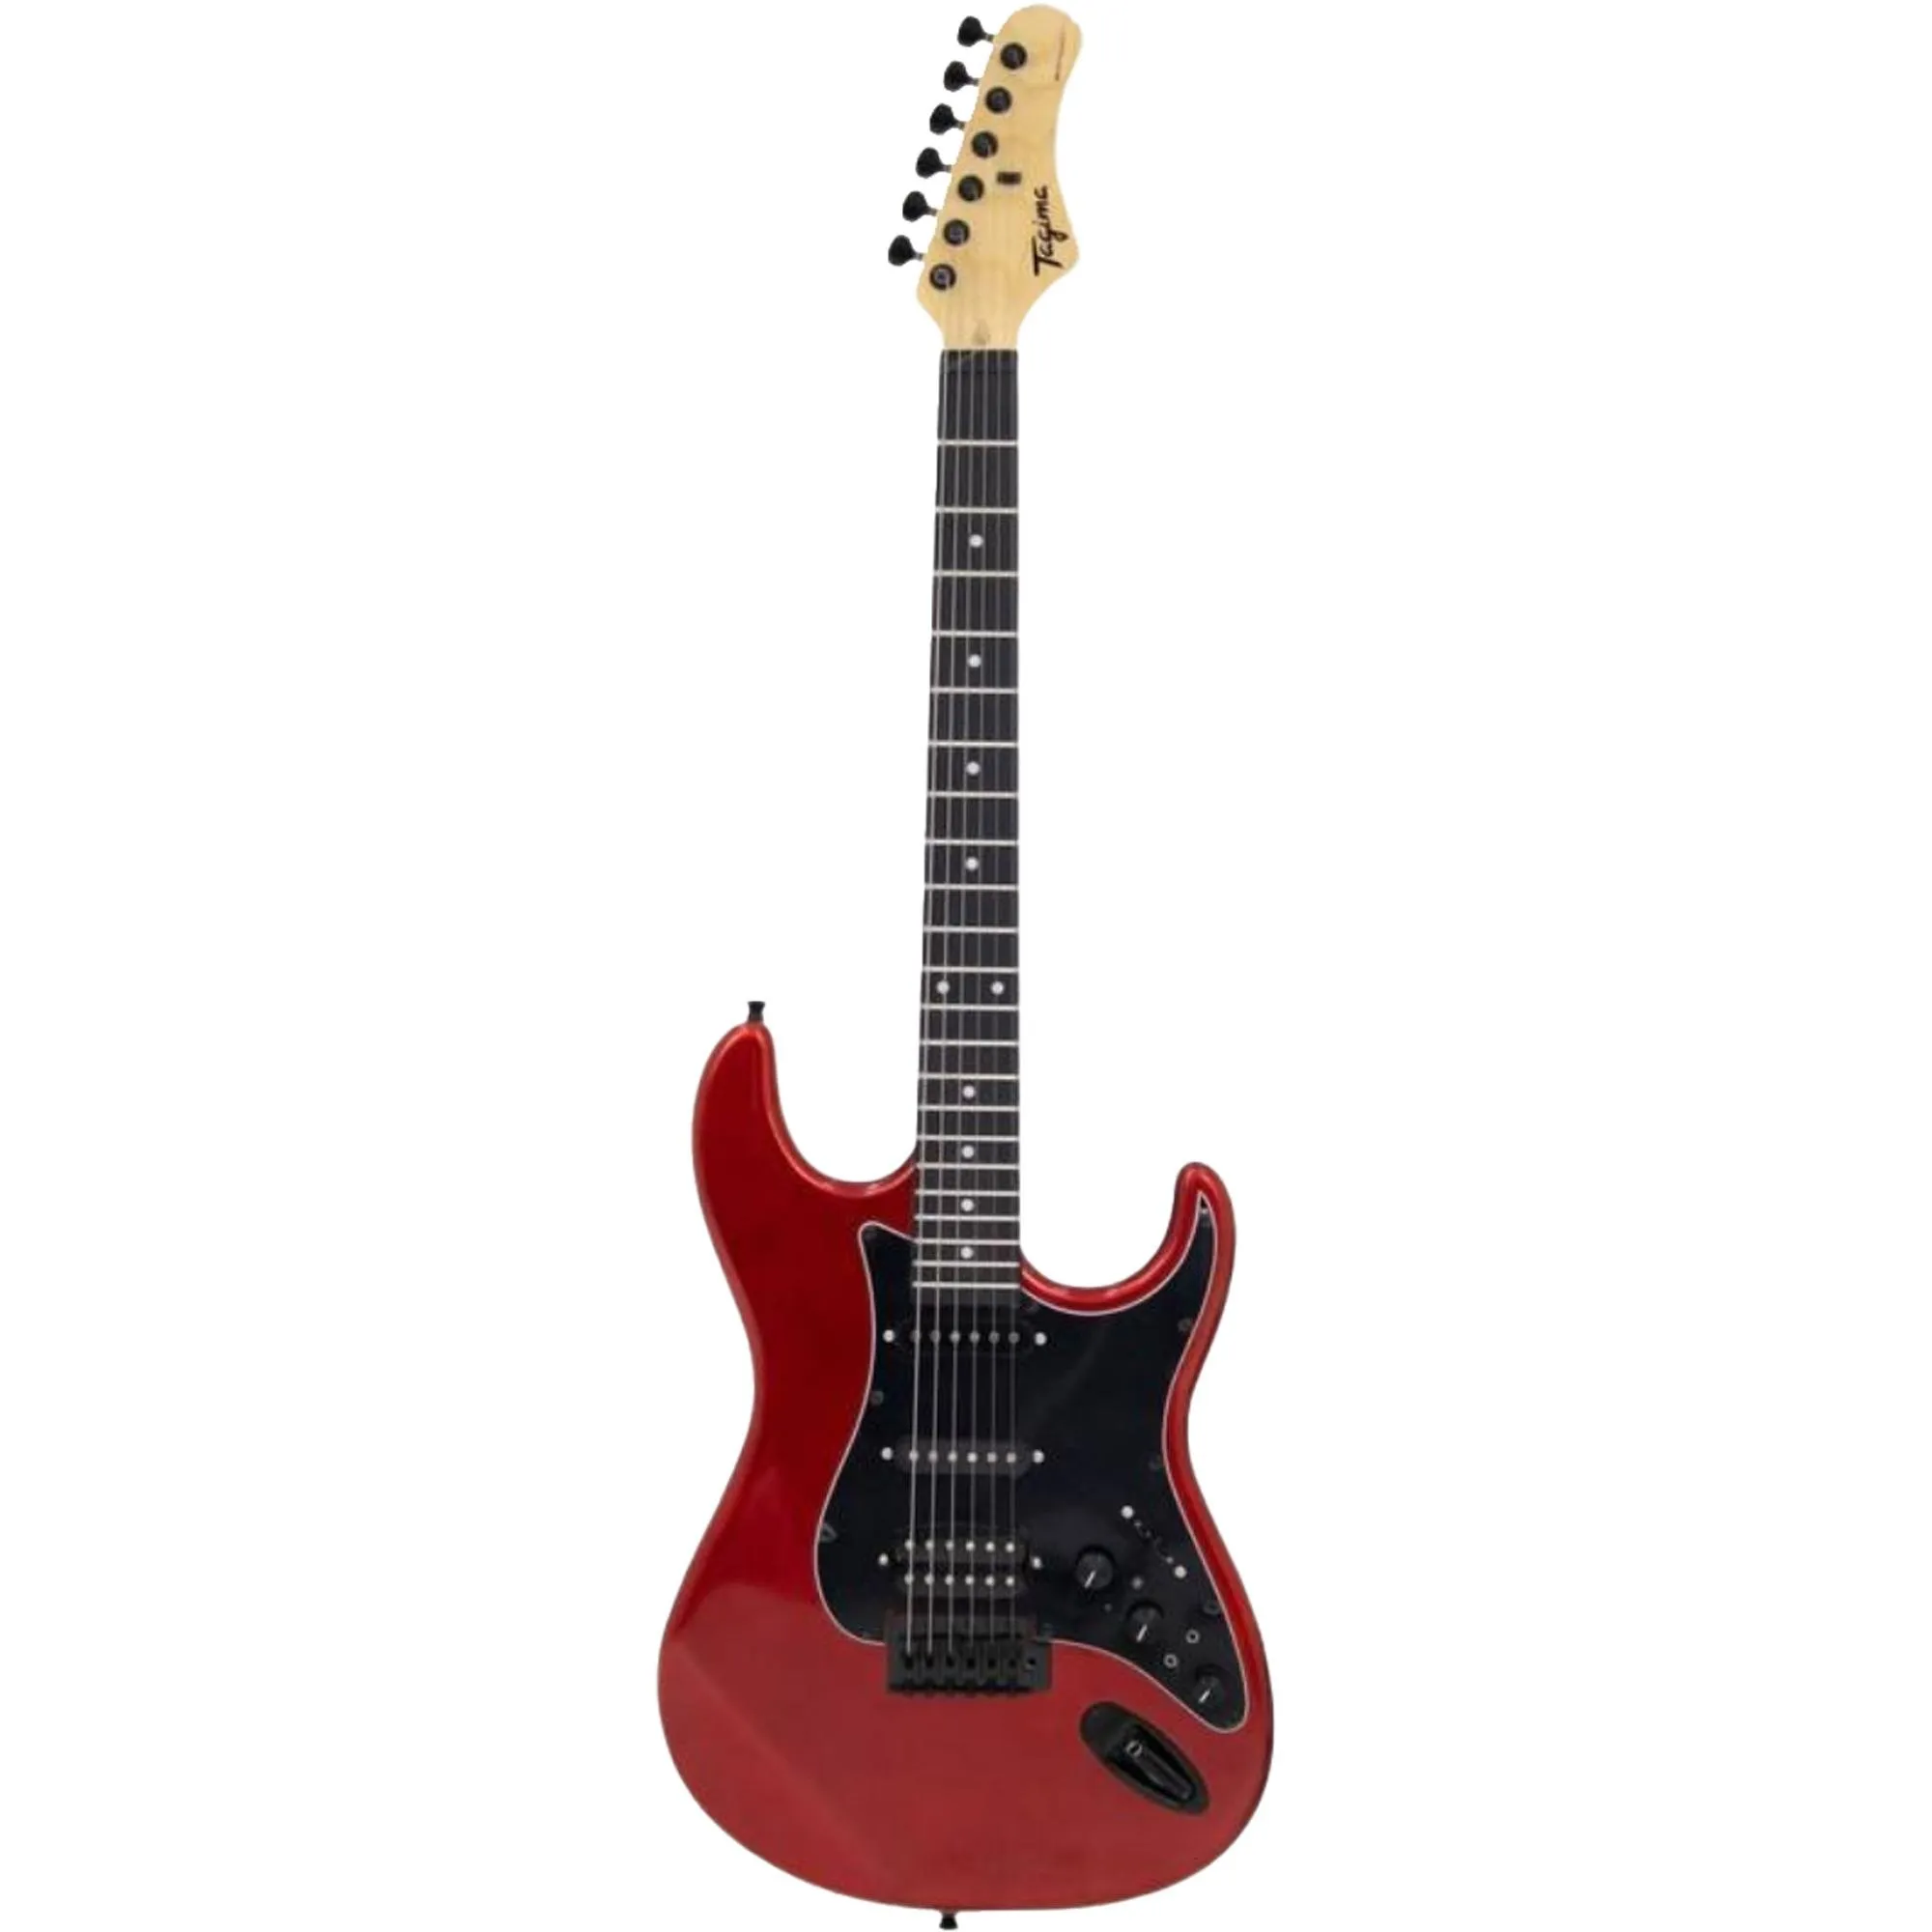 Guitarra Tagima Sixmart Candy Apple por 1.499,99 à vista no boleto/pix ou parcele em até 12x sem juros. Compre na loja Mundomax!